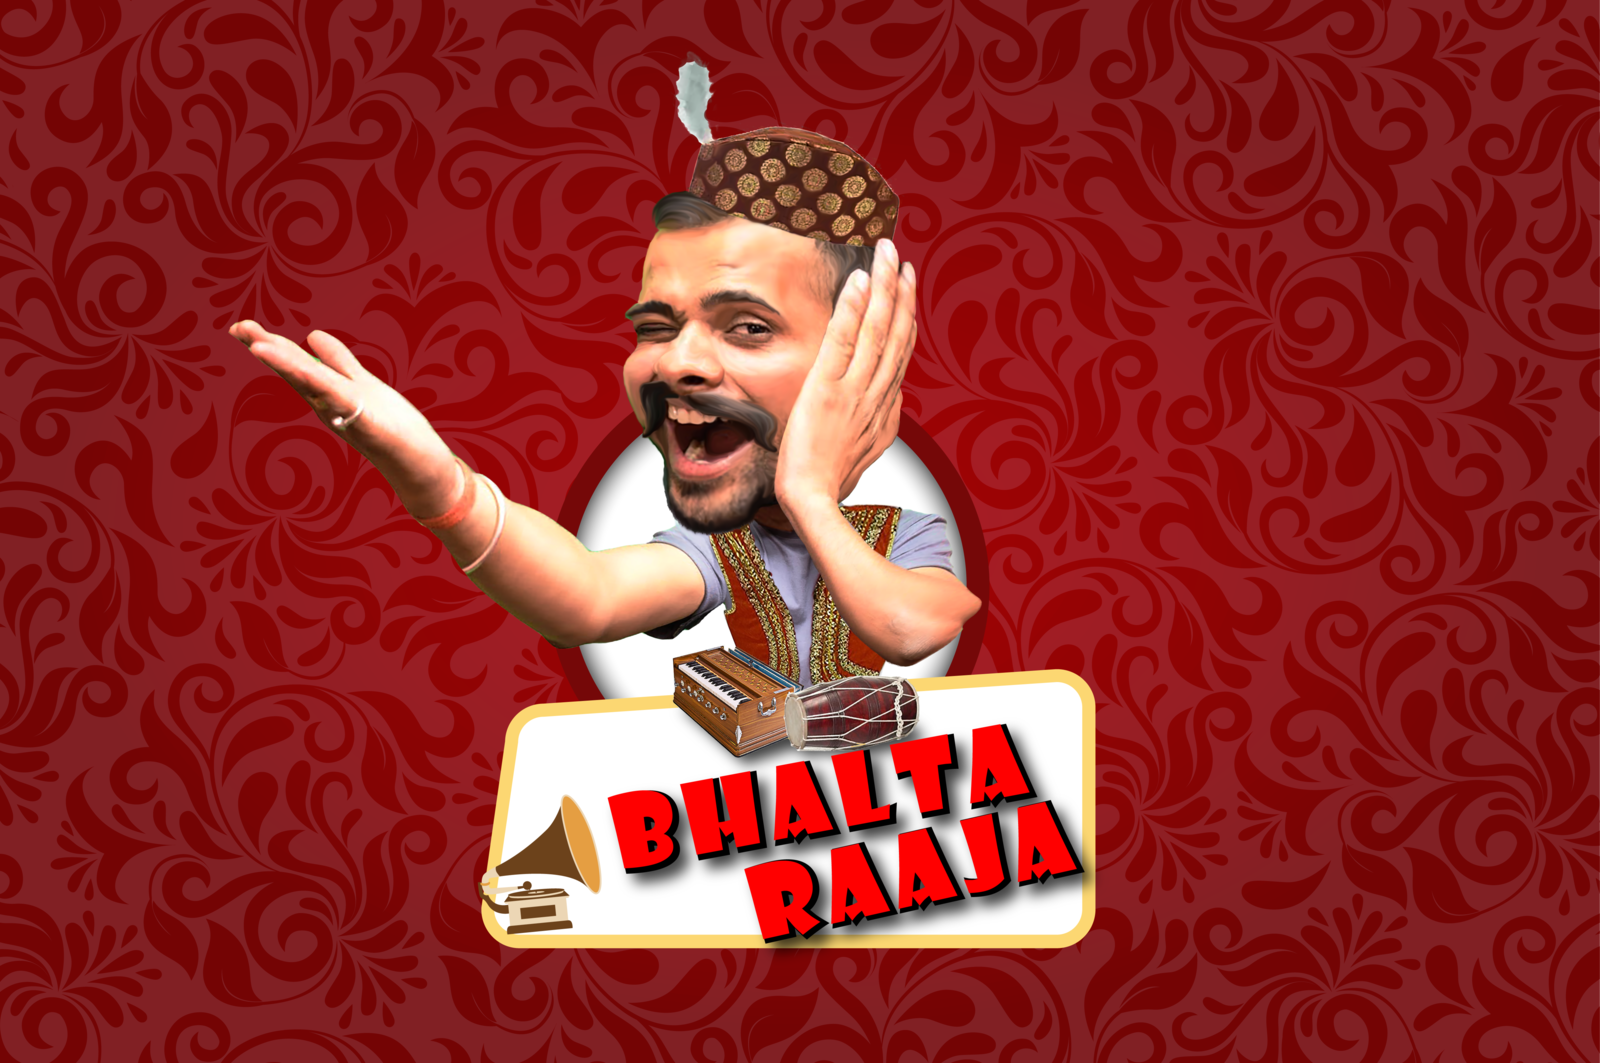 Bhalta Raja - दो ताली बजाना है गरबा करते जाना है